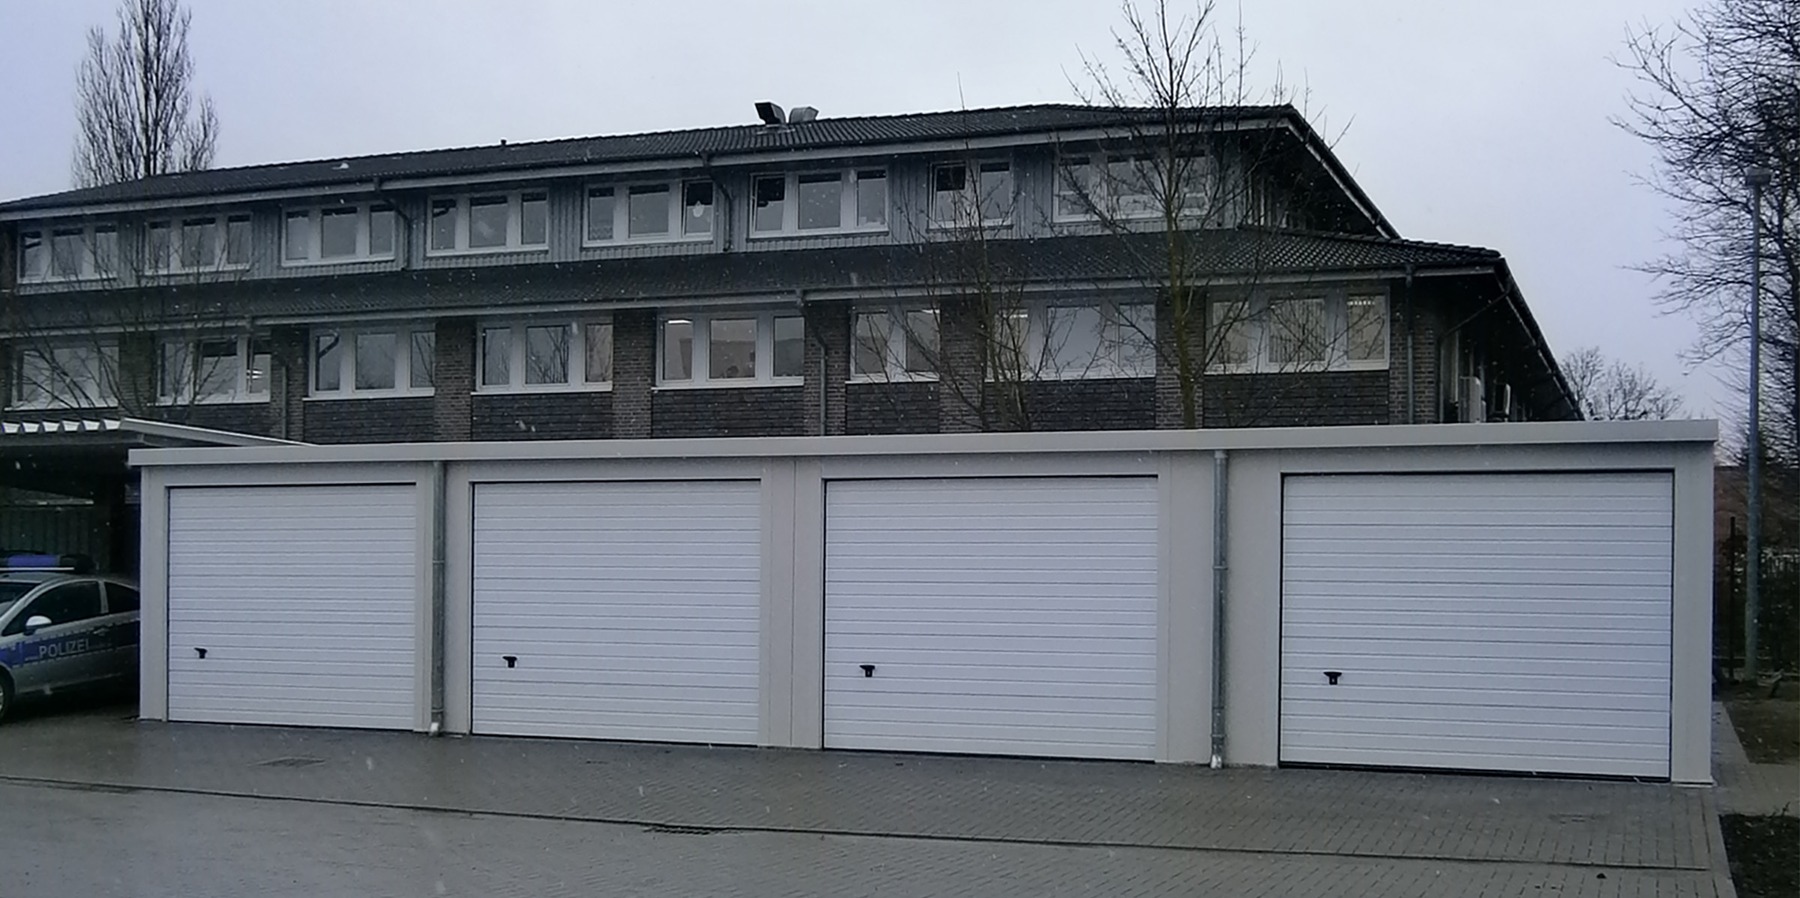 neu errichtete Garagen für Dienstfahrzeuge im Hofbereich © 2013 Betrieb für Bau und Liegenschaften Mecklenburg-Vorpommern